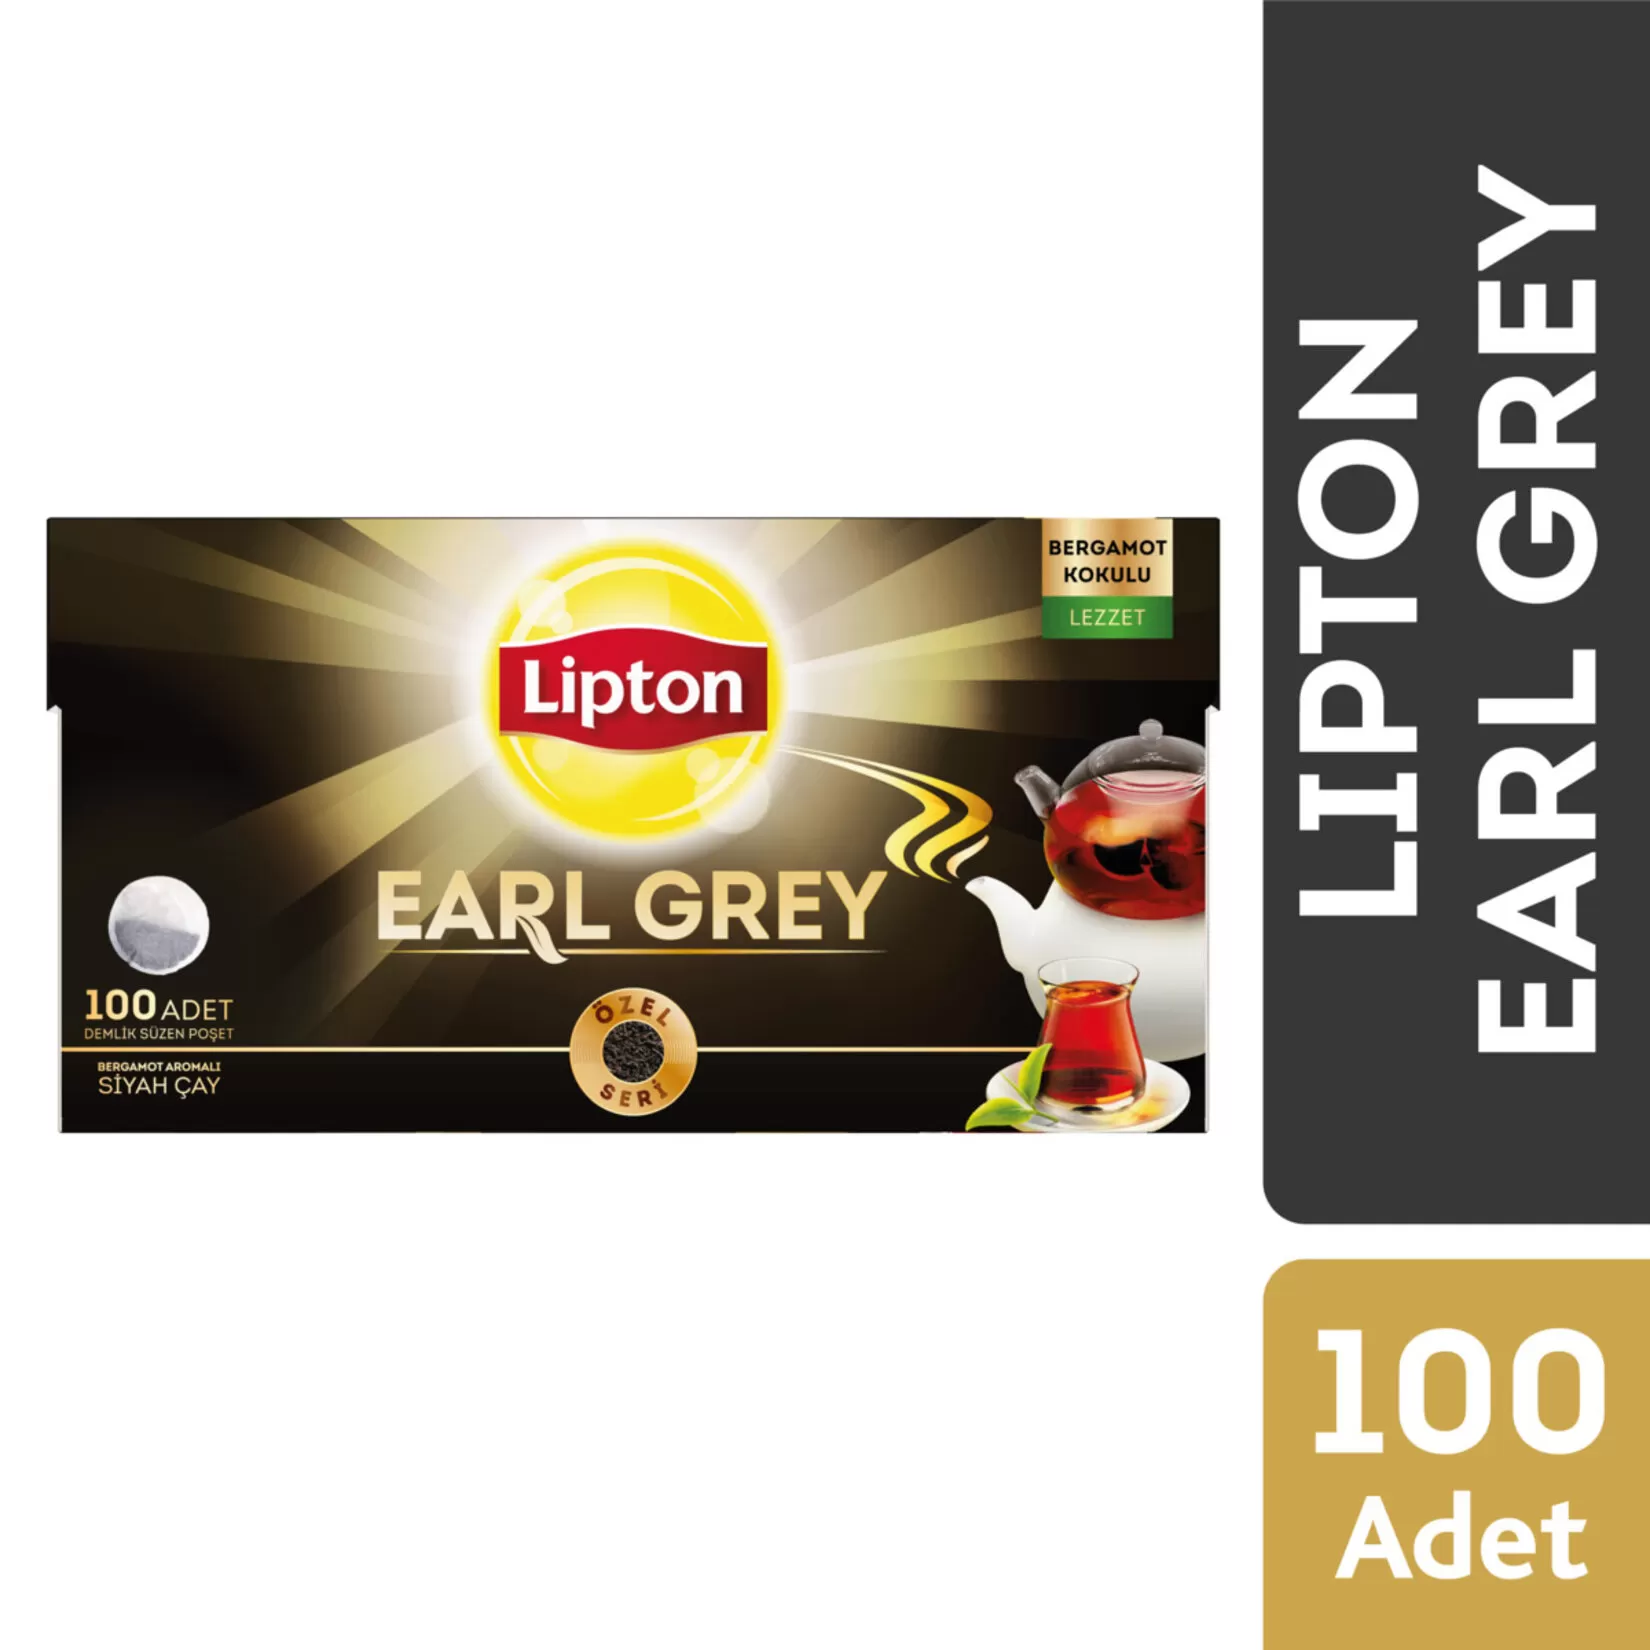 Lipton Earl Grey Bergamot Aromalı Demlik Poşet Çay 100'lü 8 Paket